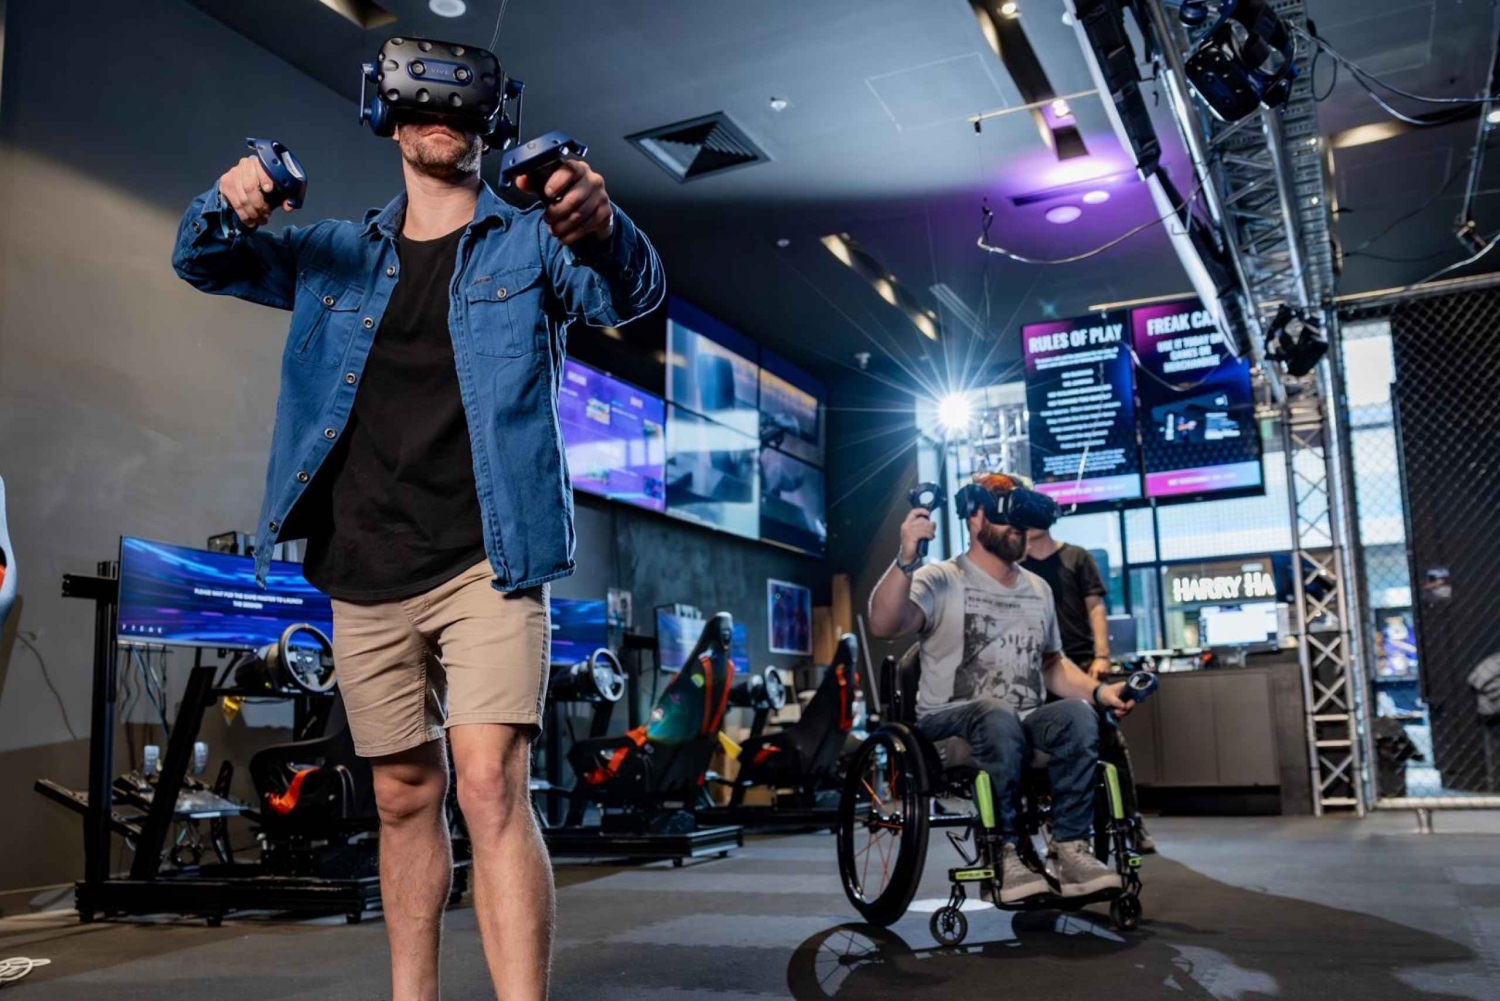 Penrith: VR Escape Room Experience dla 2 osób